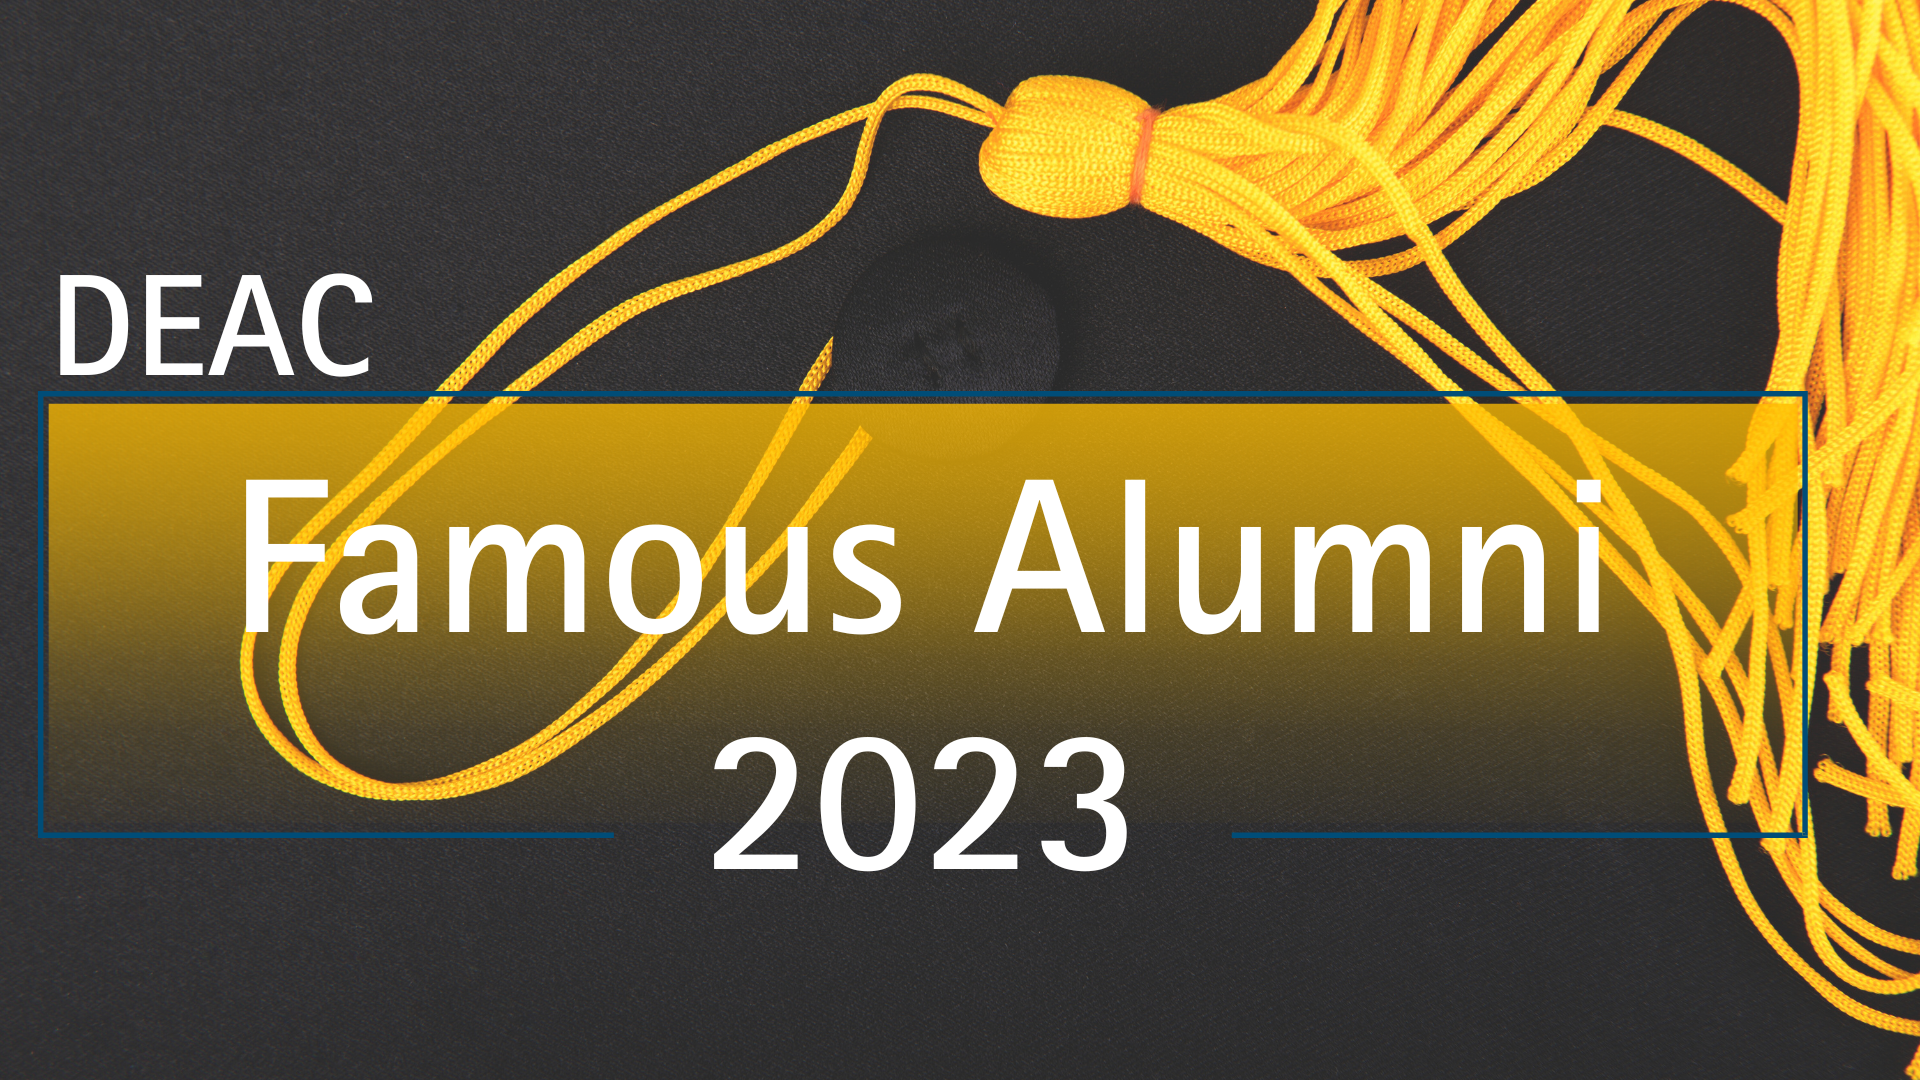 DEAC 2023 Famous Alumni